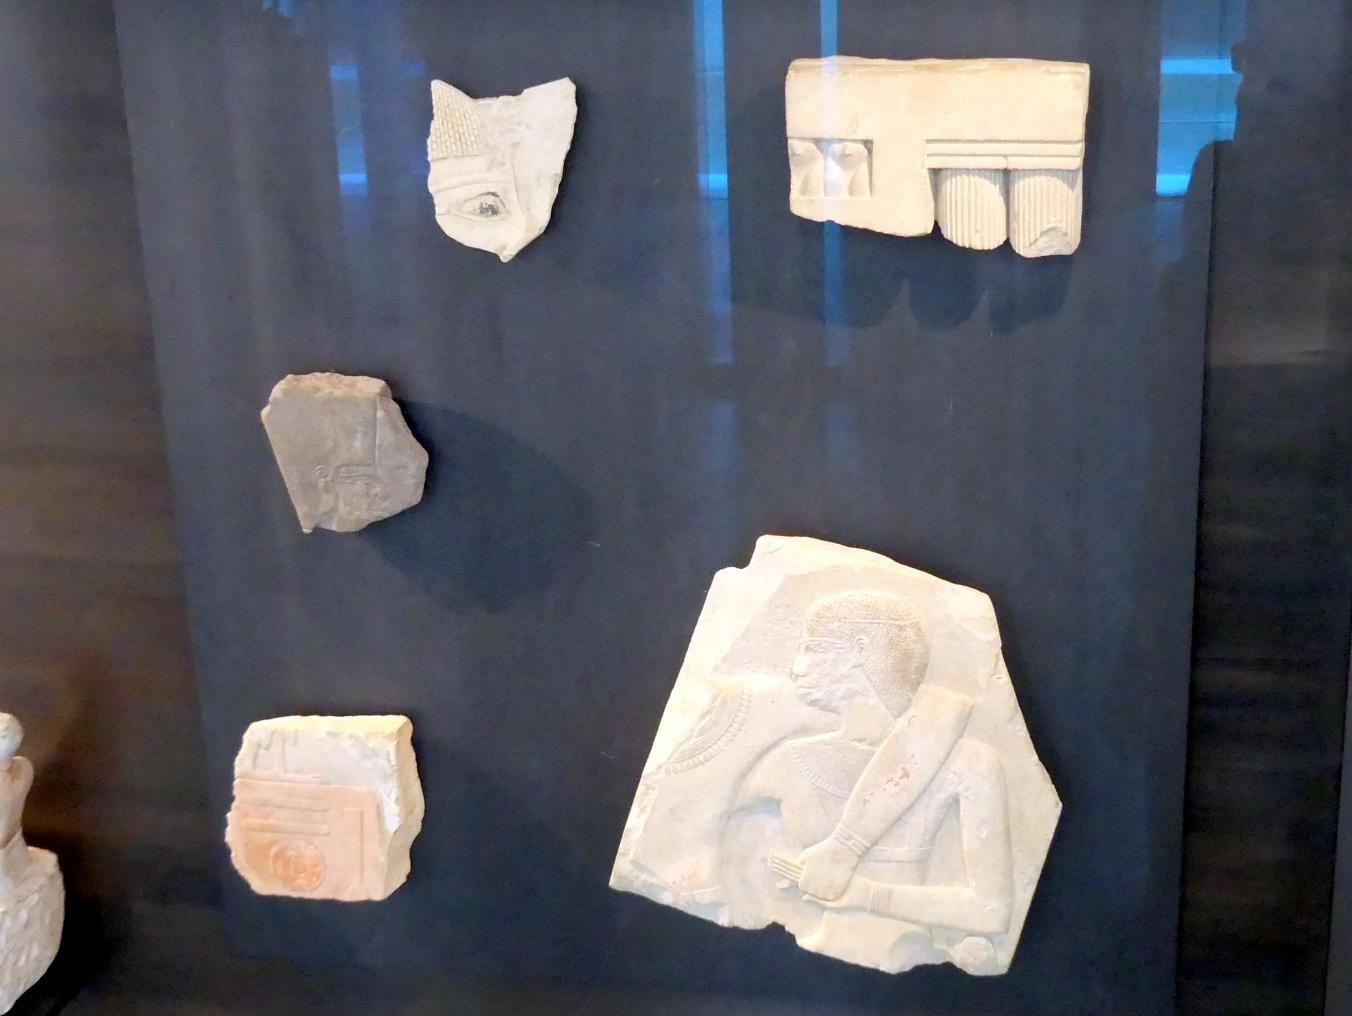 Königliche Reliefframente des frühen Mittleren Reiches, 11. Dynastie, Undatiert, 2070 - 2020 v. Chr.